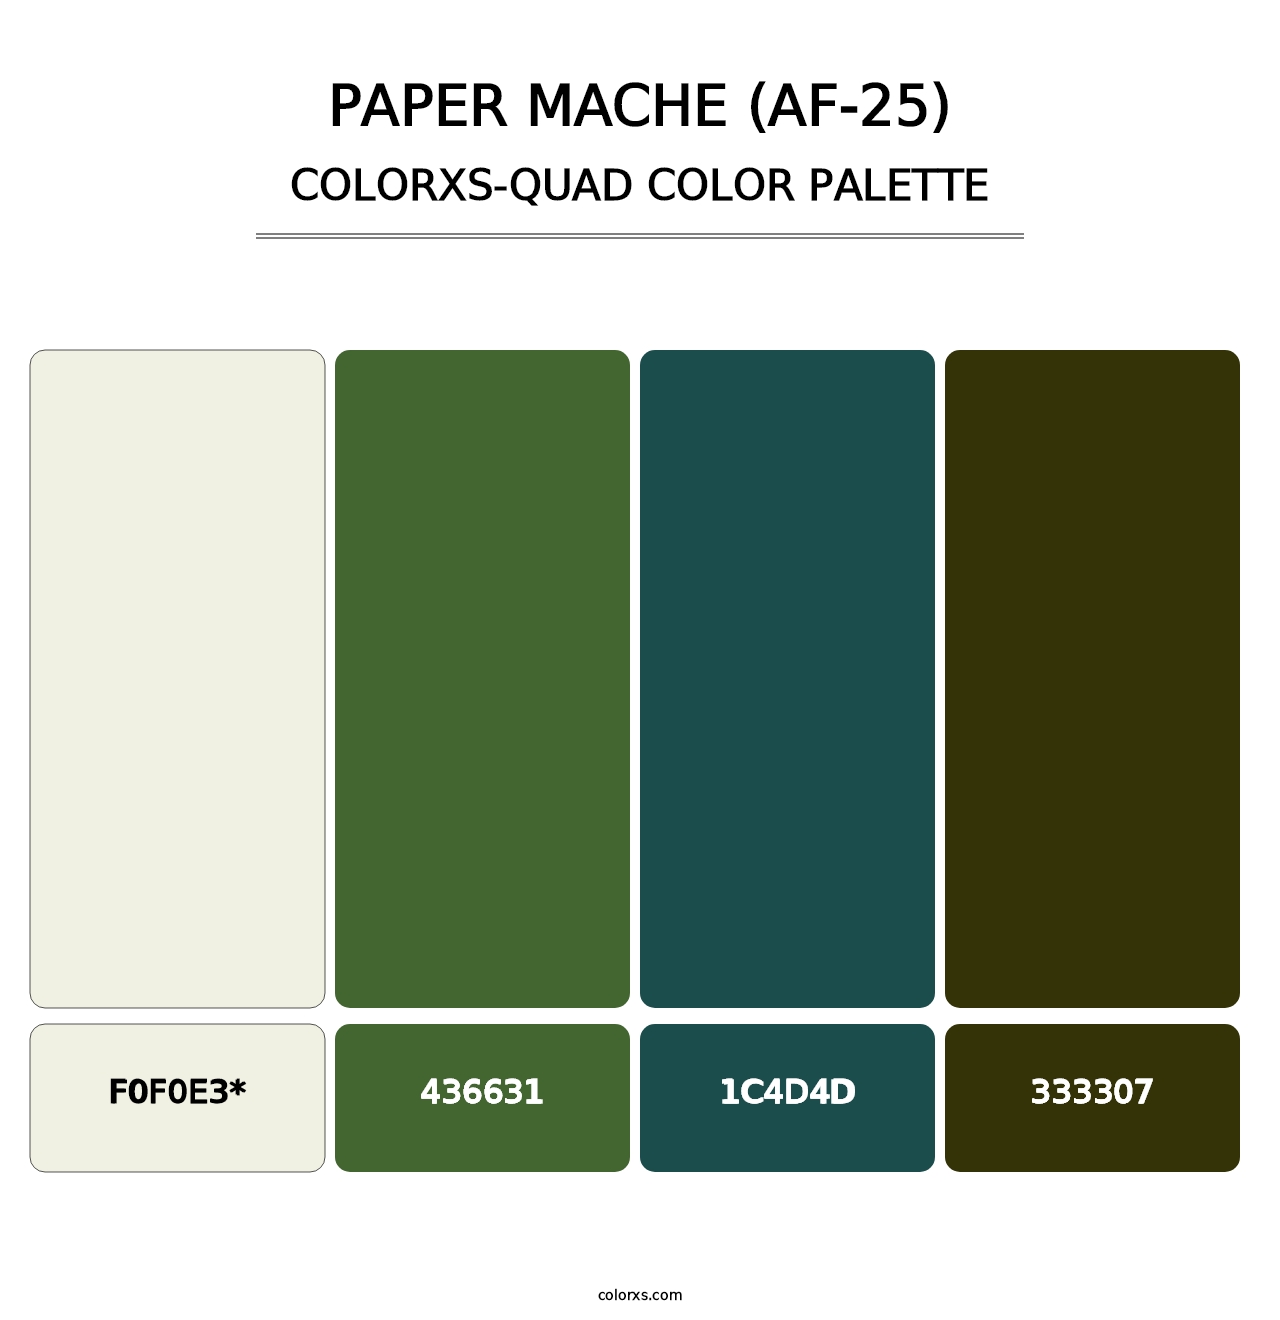 Paper Mache (AF-25) - Colorxs Quad Palette